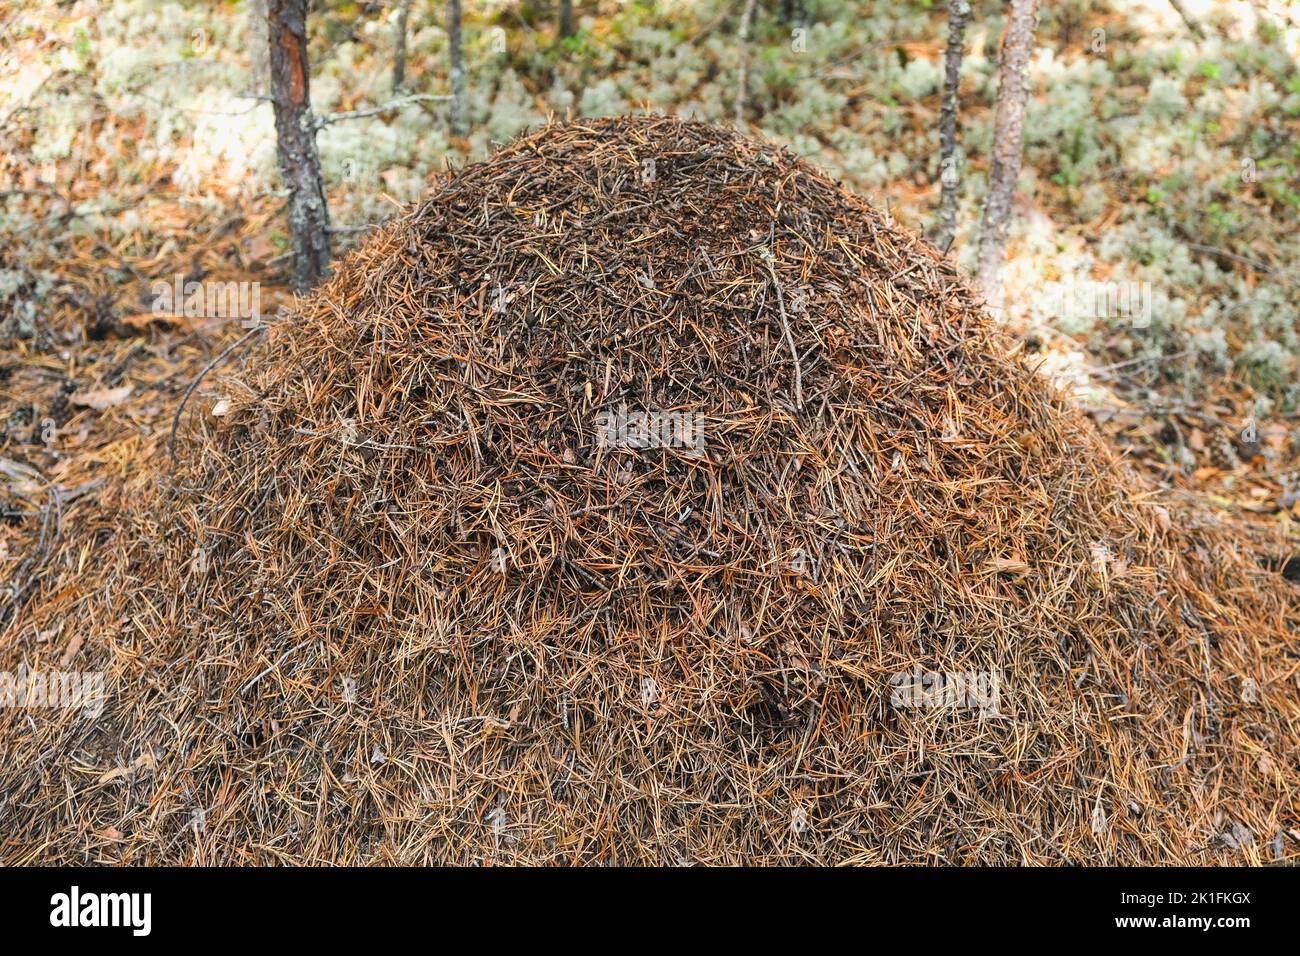 Ein Ameisenhaufen mit einer Ameisenkolonie in Nahaufnahme. Ein ...